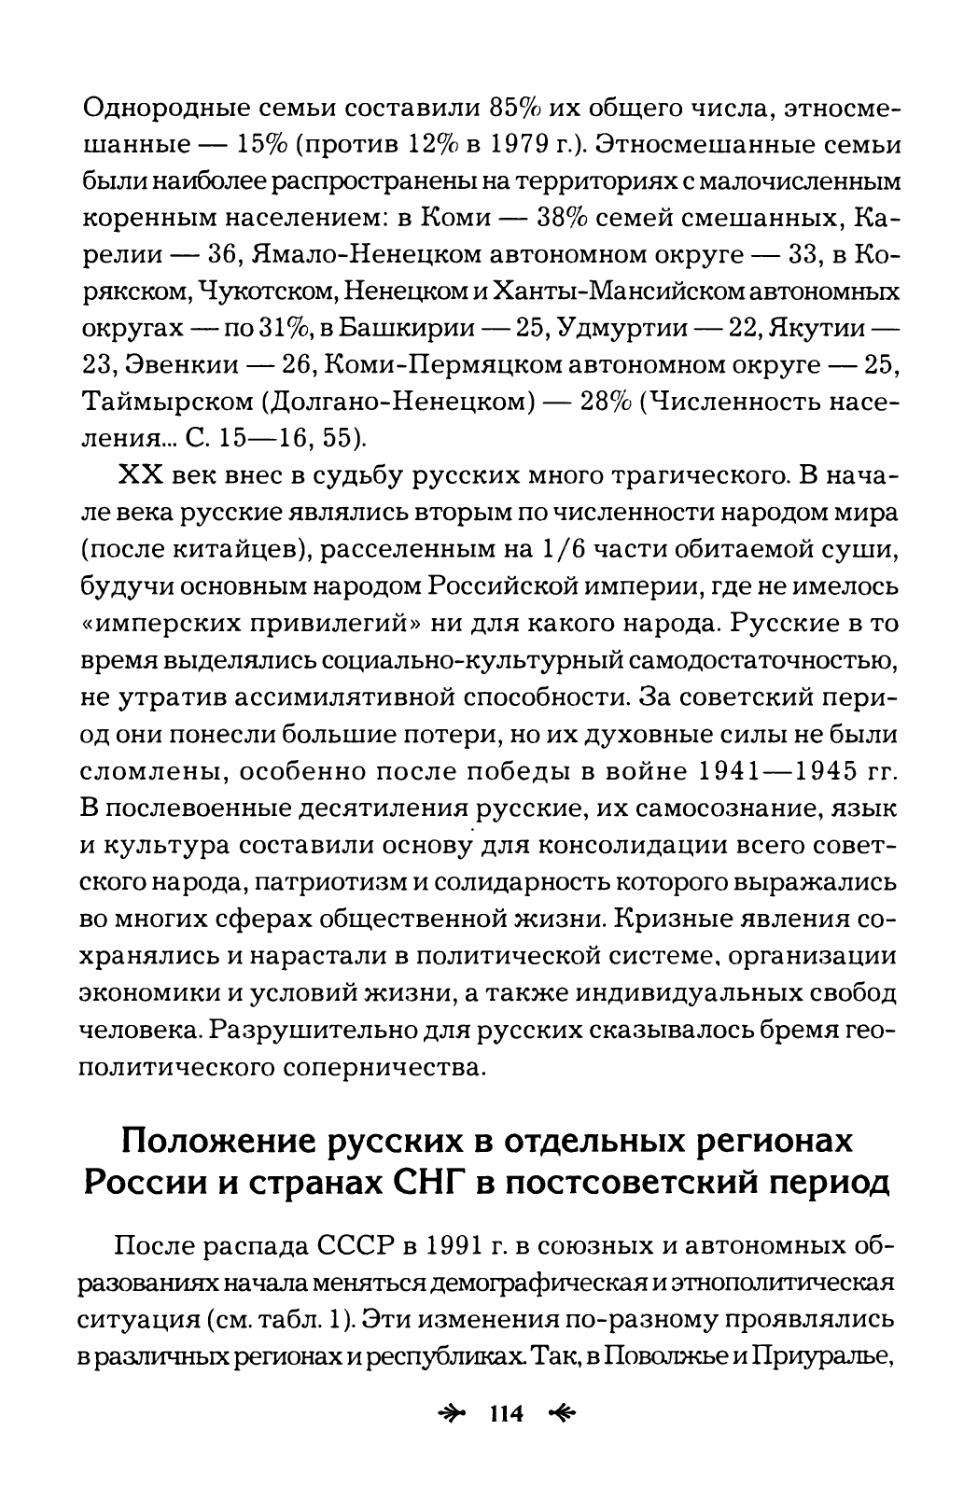 Положение  русских  в  отдельных  регионах России  и  странах  СНГ  в  постсоветский  период